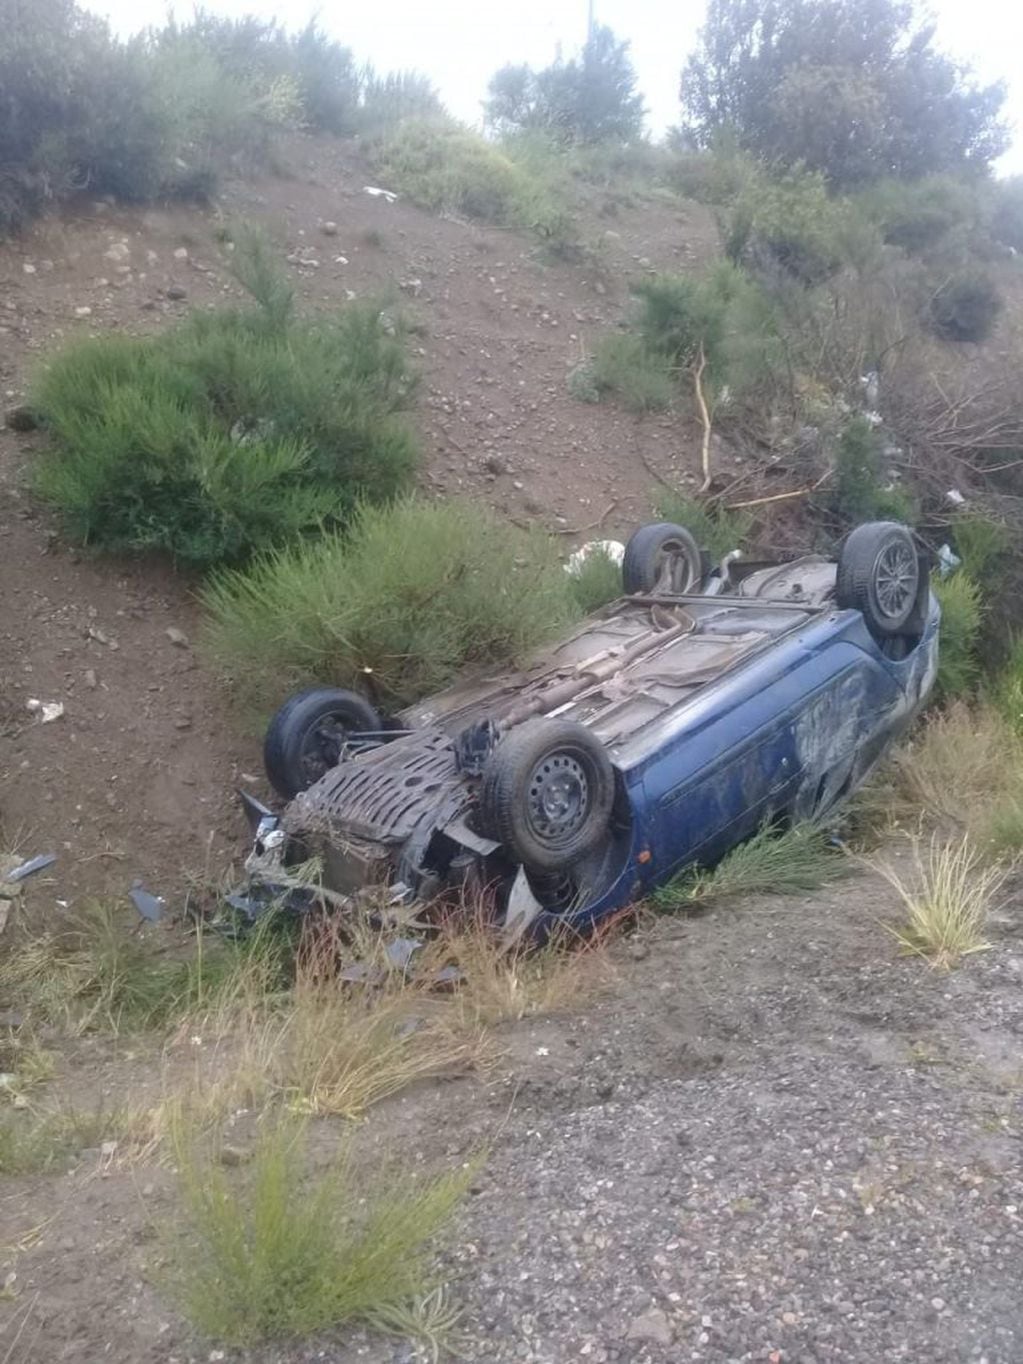 El conductor iba solo al momento del accidente (web).